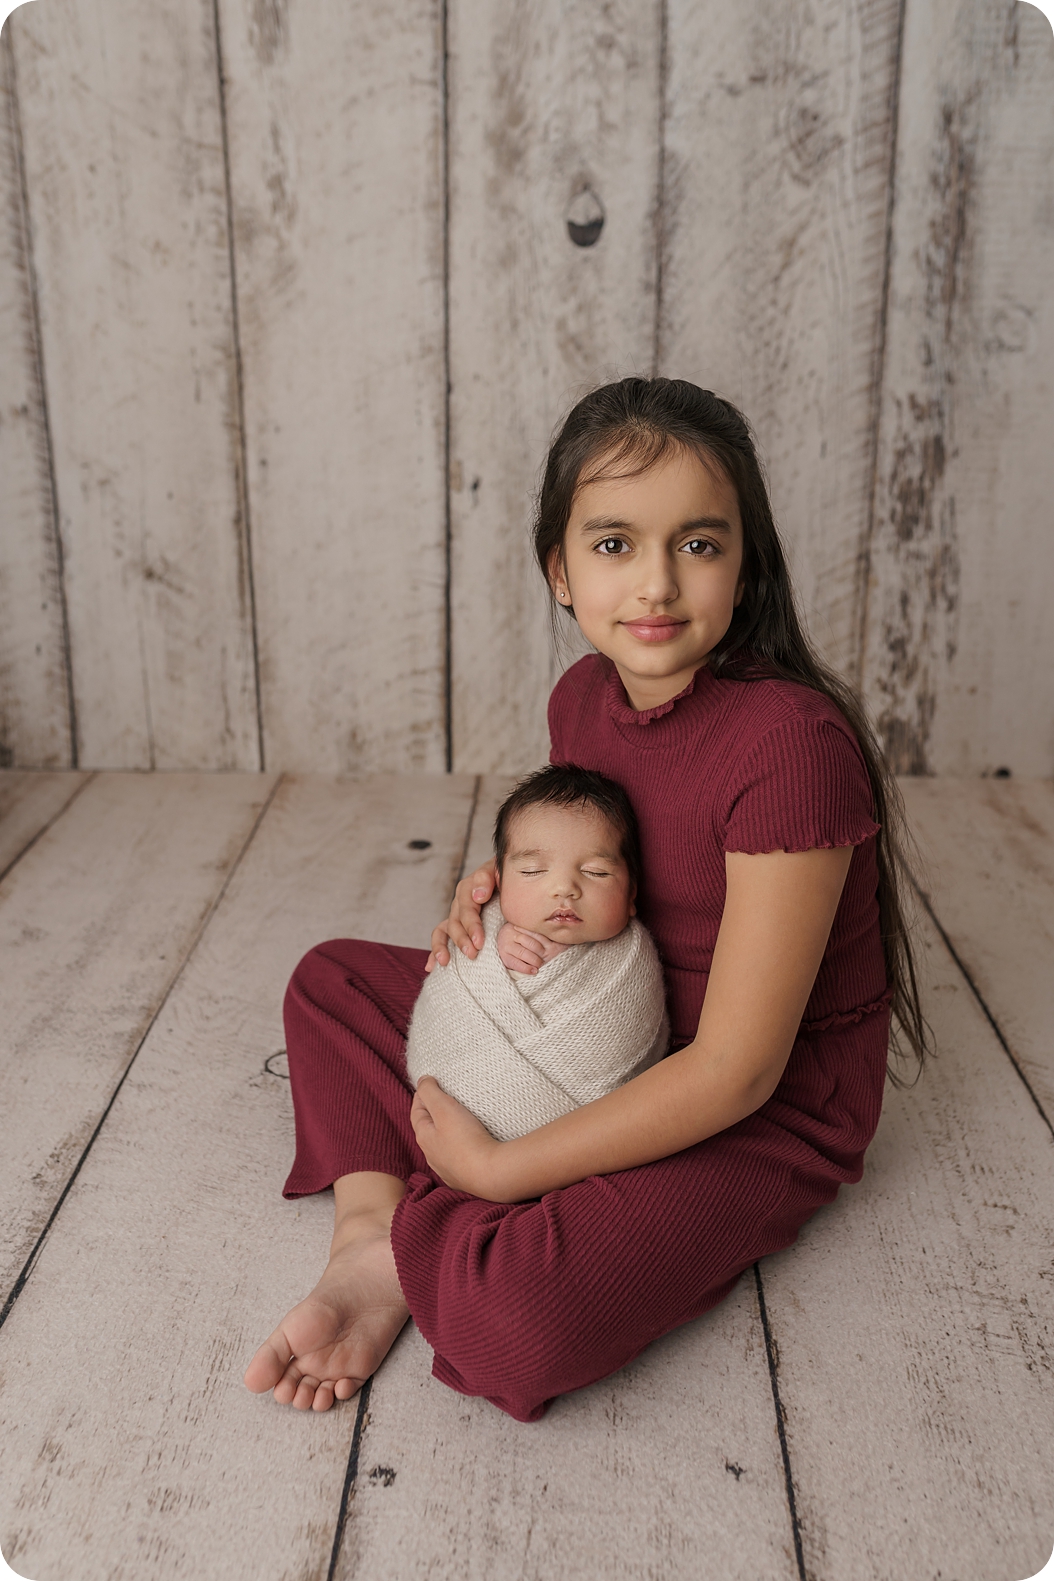 Newborn Portraits in Utah Studio for Baby Boy | {Beka Price Photography | Utah Newborn Photographer}